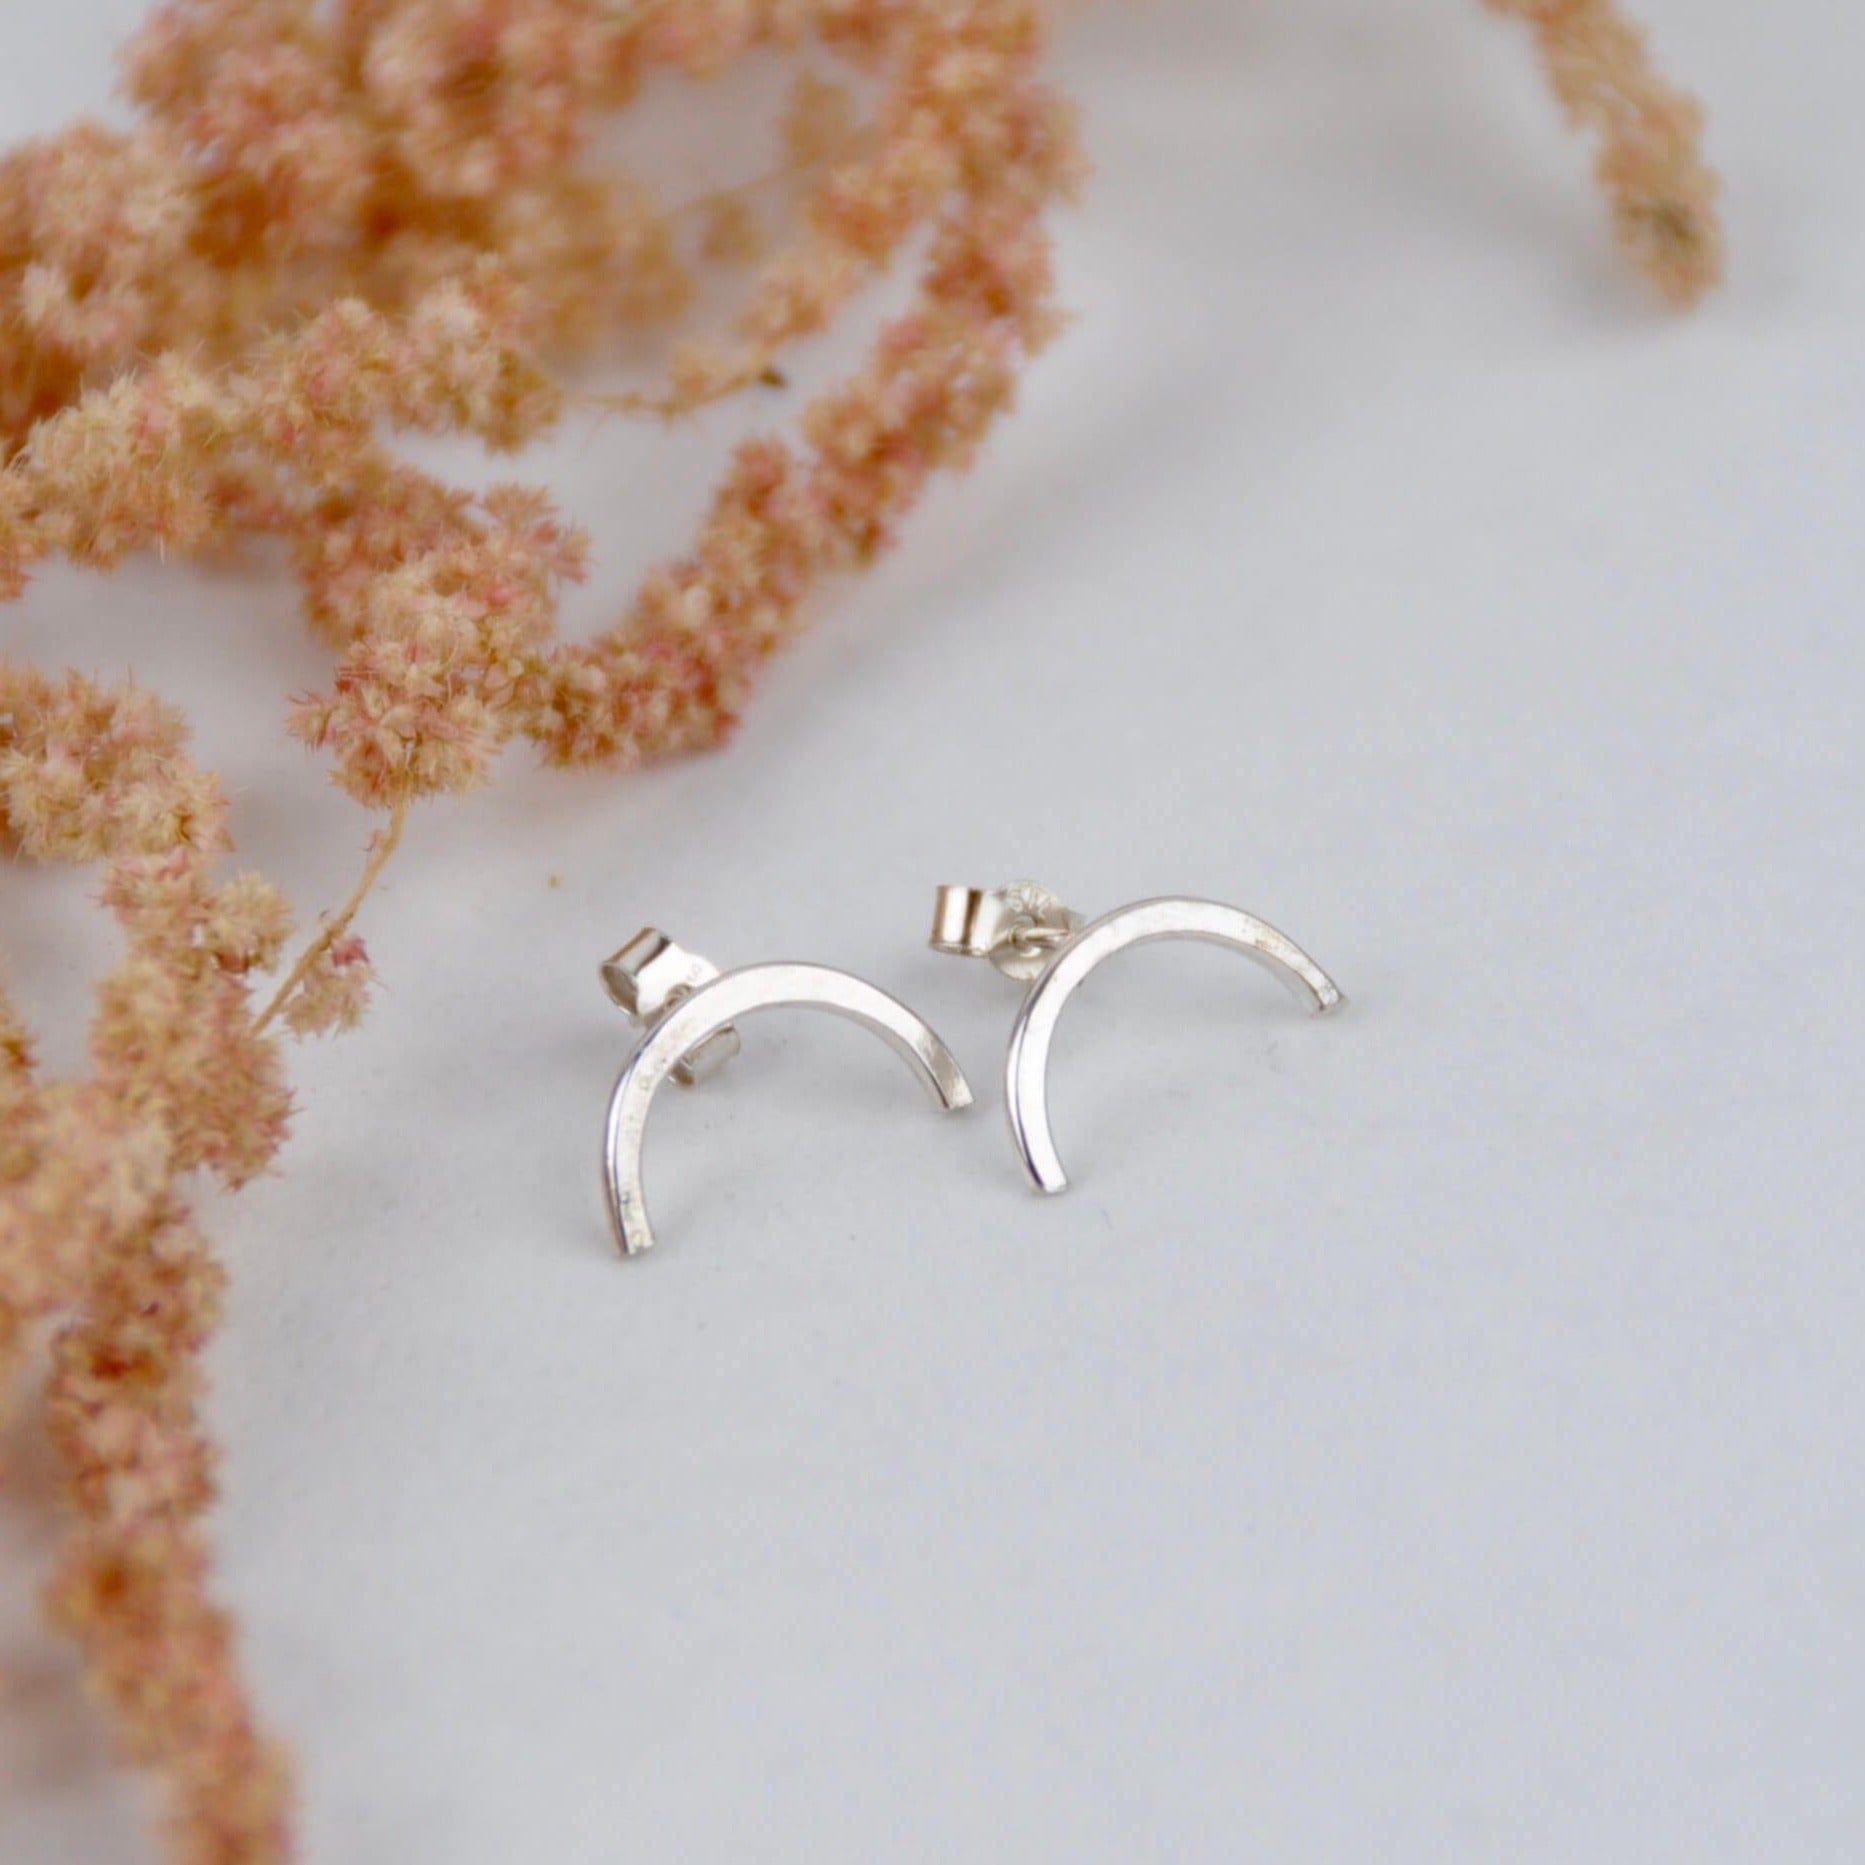 Amelia Stone Jewellery Earrings 'Half Moon' Stud Earrings - Sterling Silver